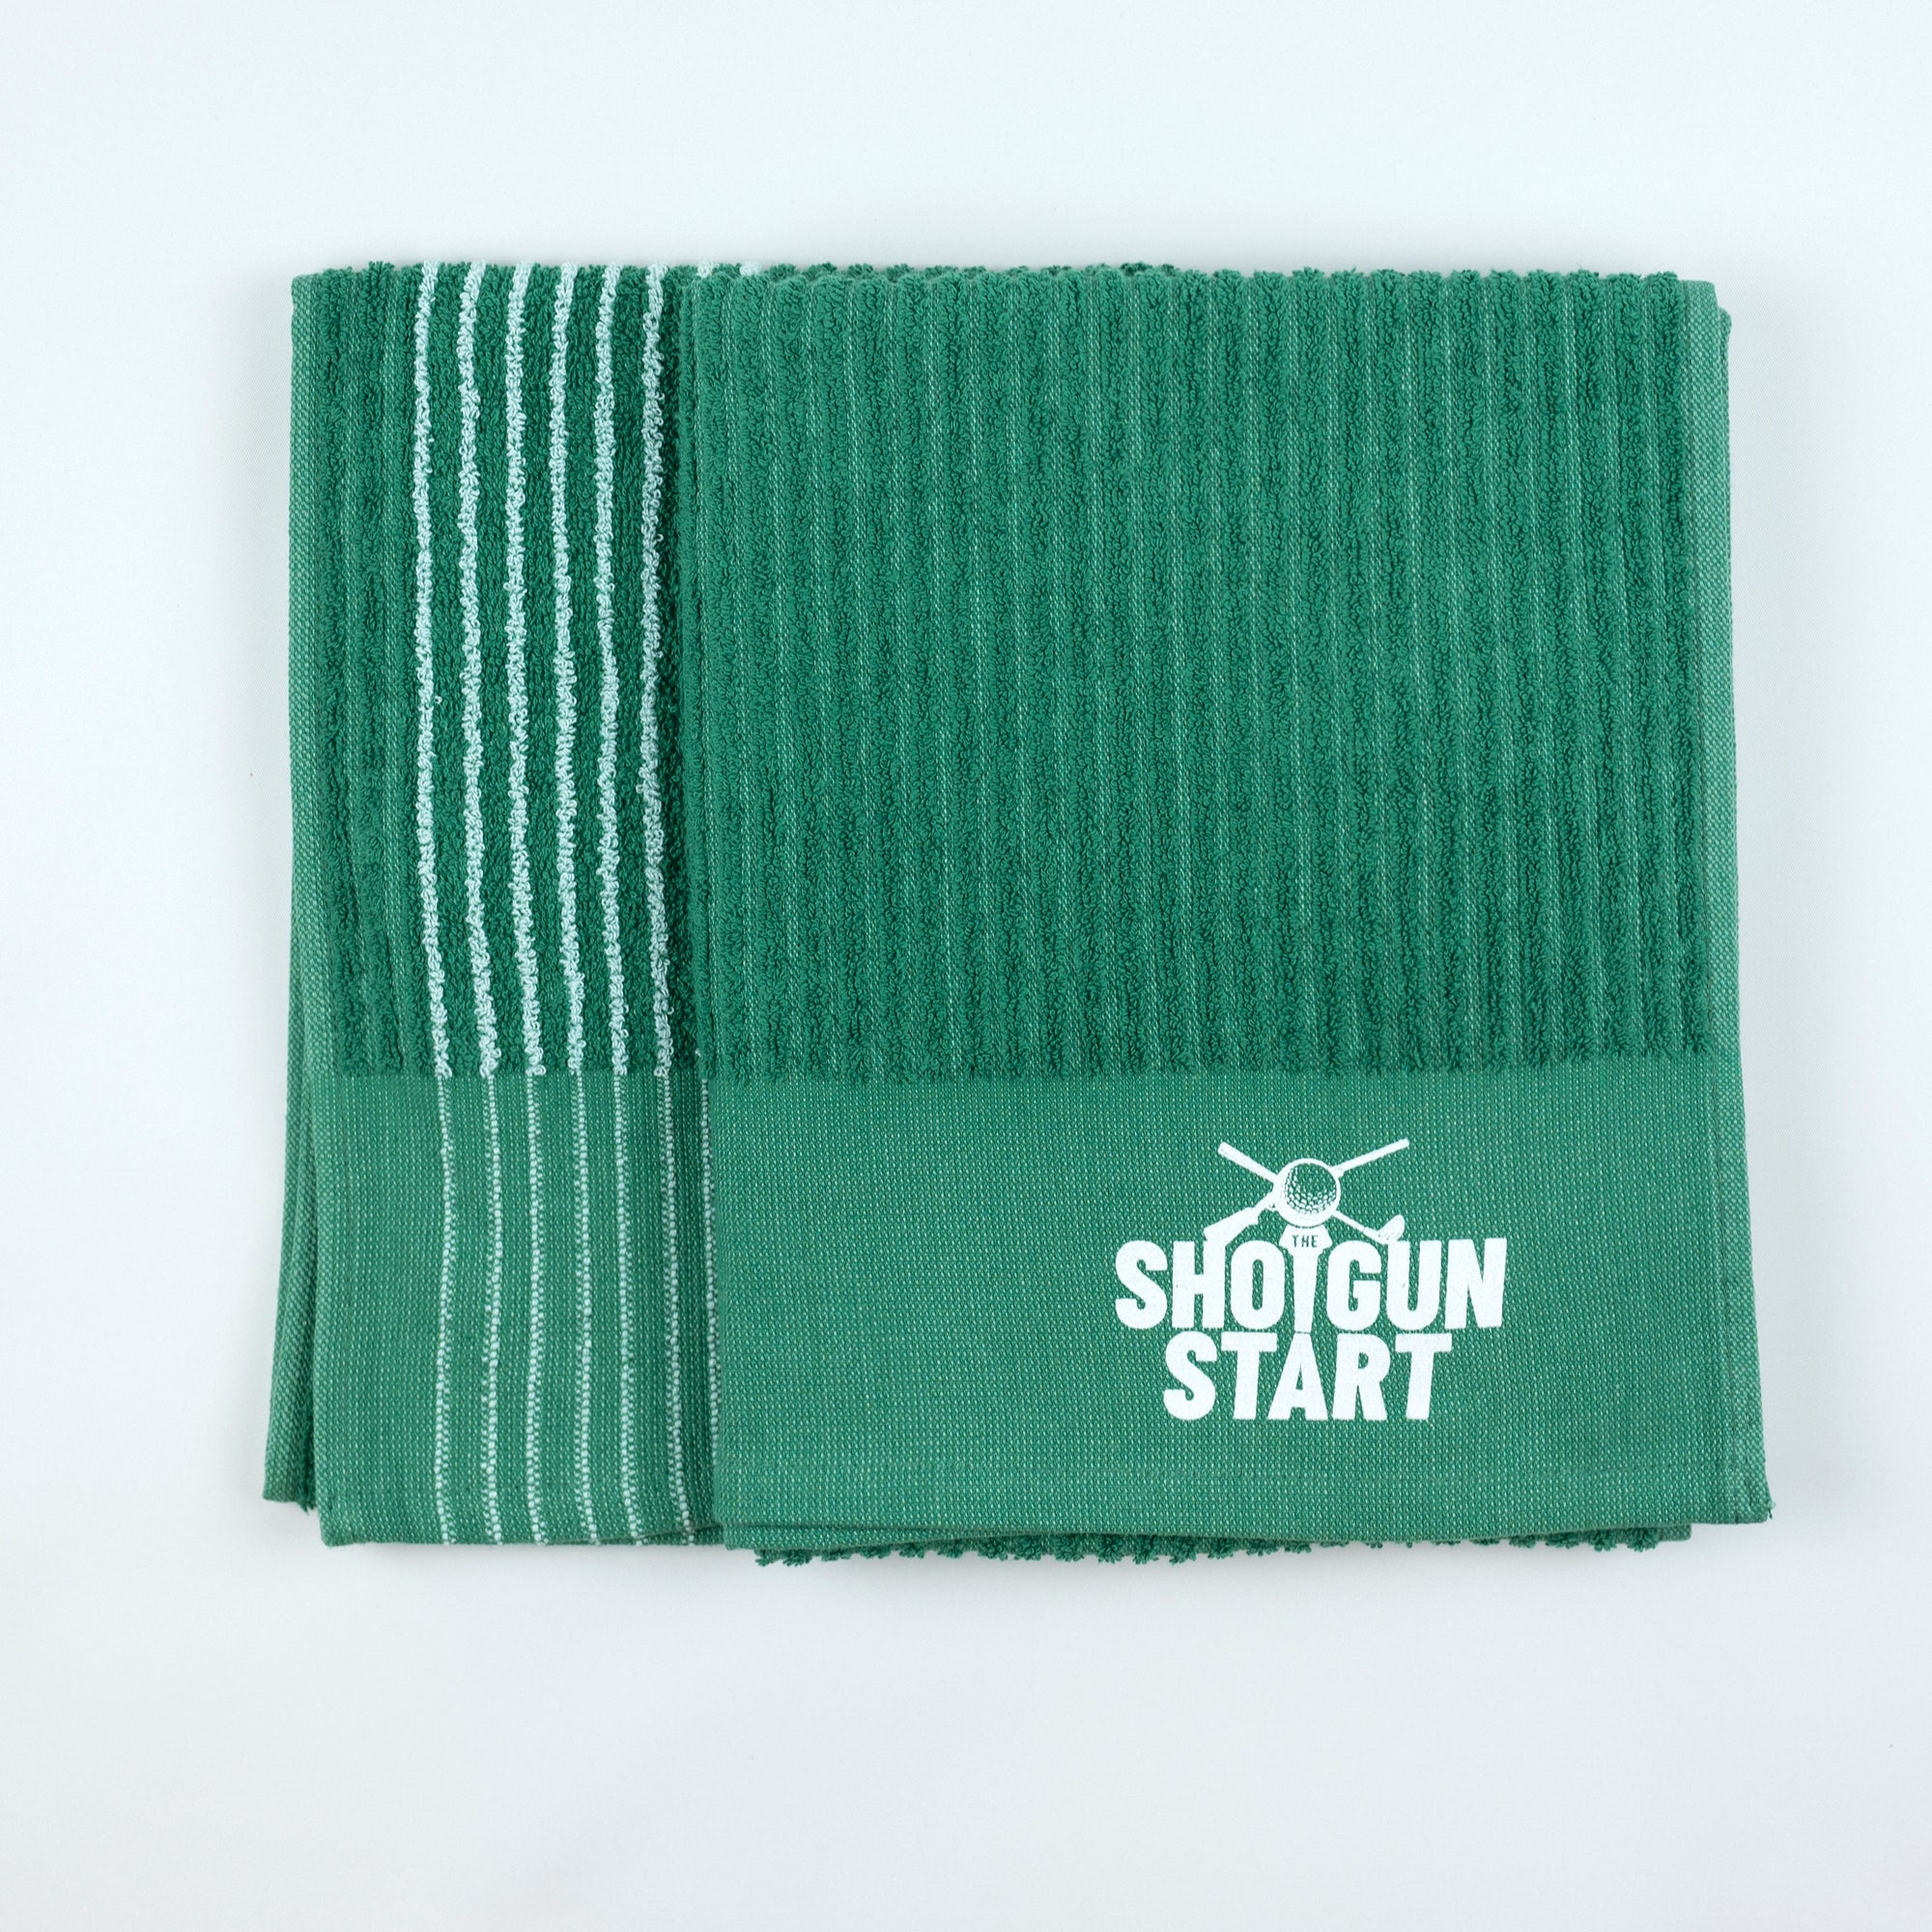 Shotgun Start Logo Towel - Green